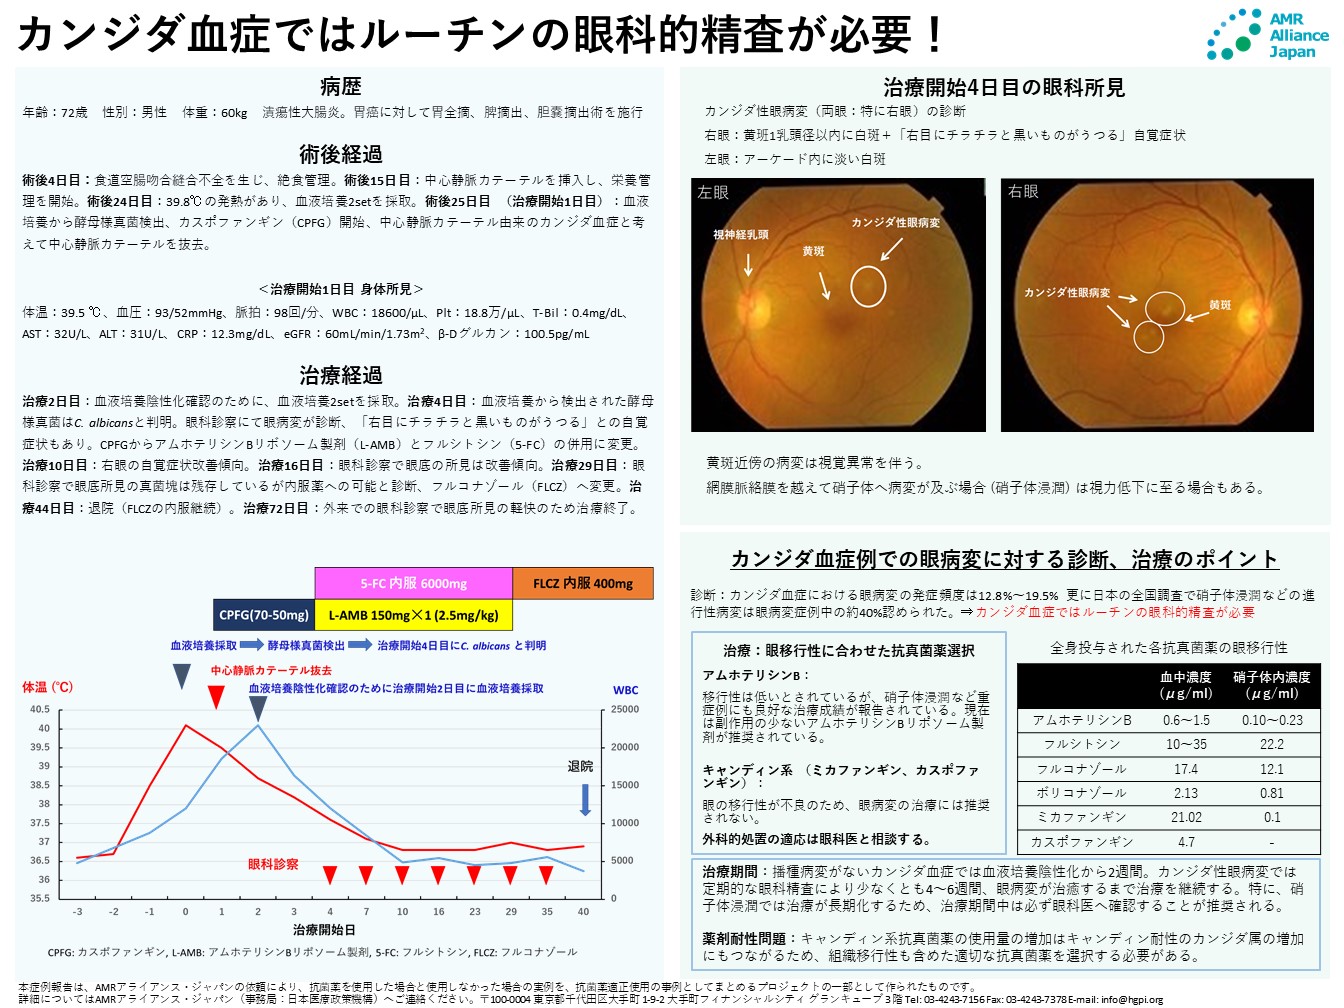 【症例報告】植田貴史「カンジダ血症ではルーチンの眼科的精査が必要！」（AMRアライアンス・ジャパン、2021年11月18日）